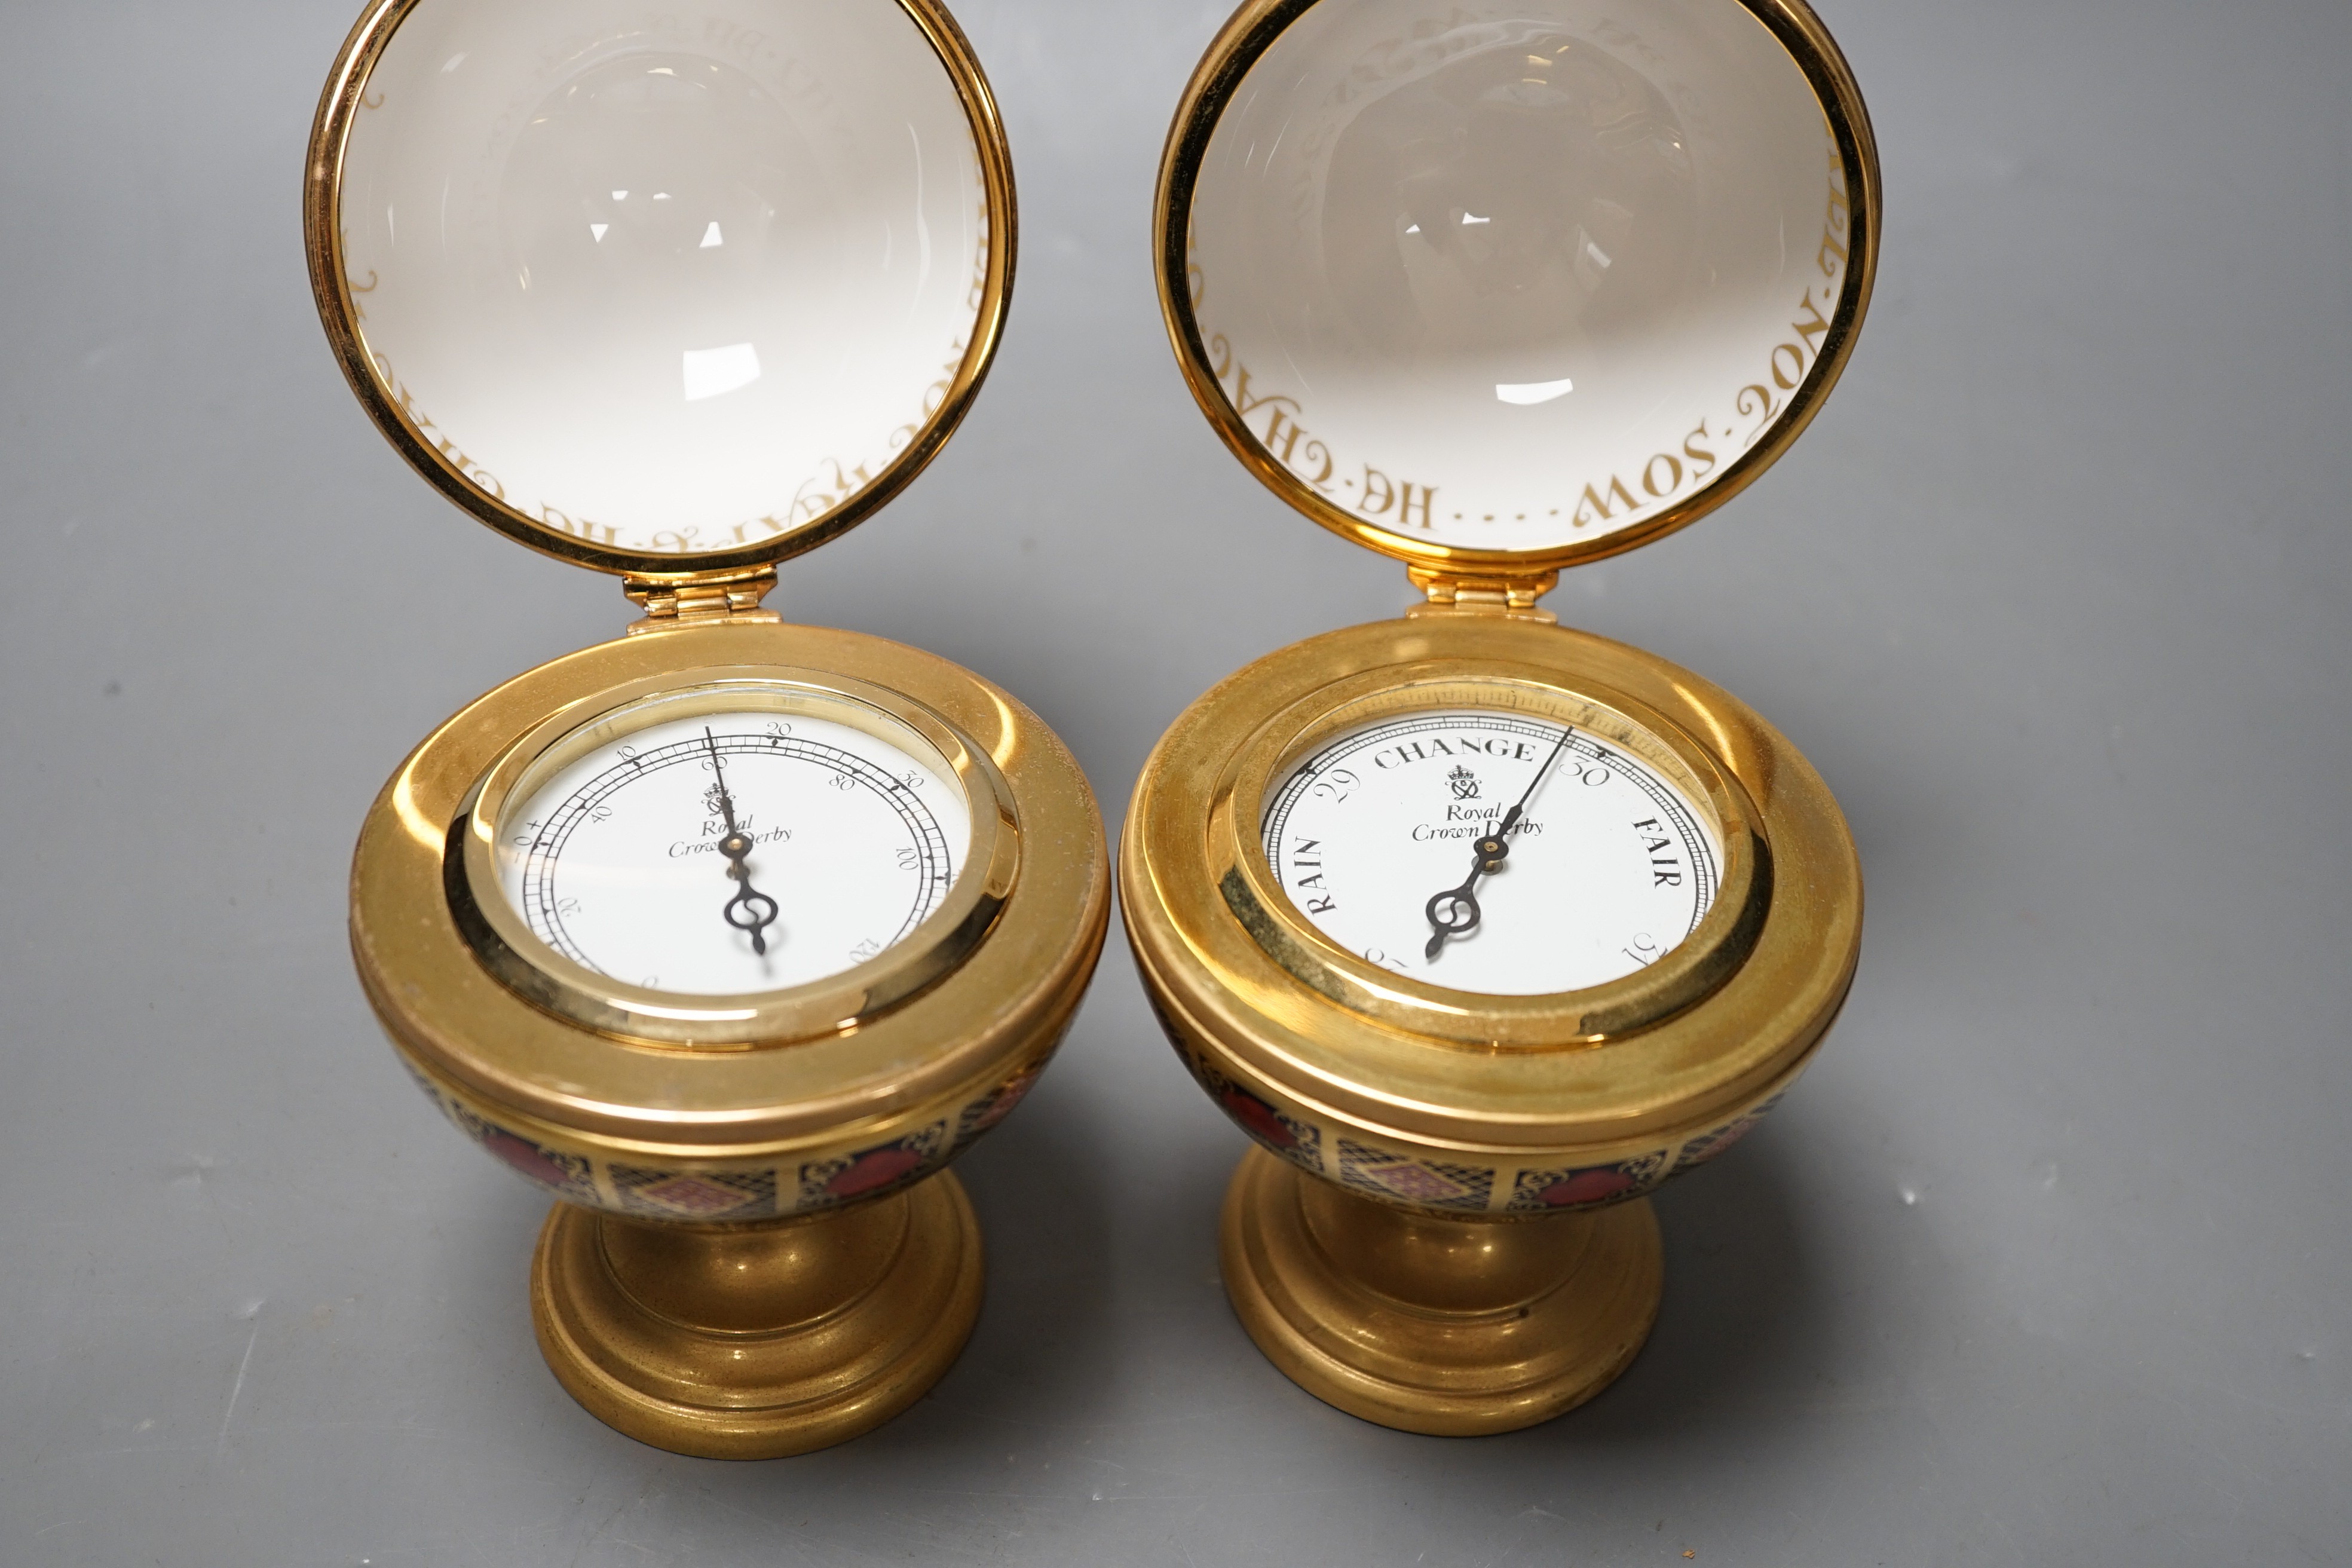 A Royal Crown Derby Millennium globe thermometer and a Millennium globe aneroid barometer, 13cms high